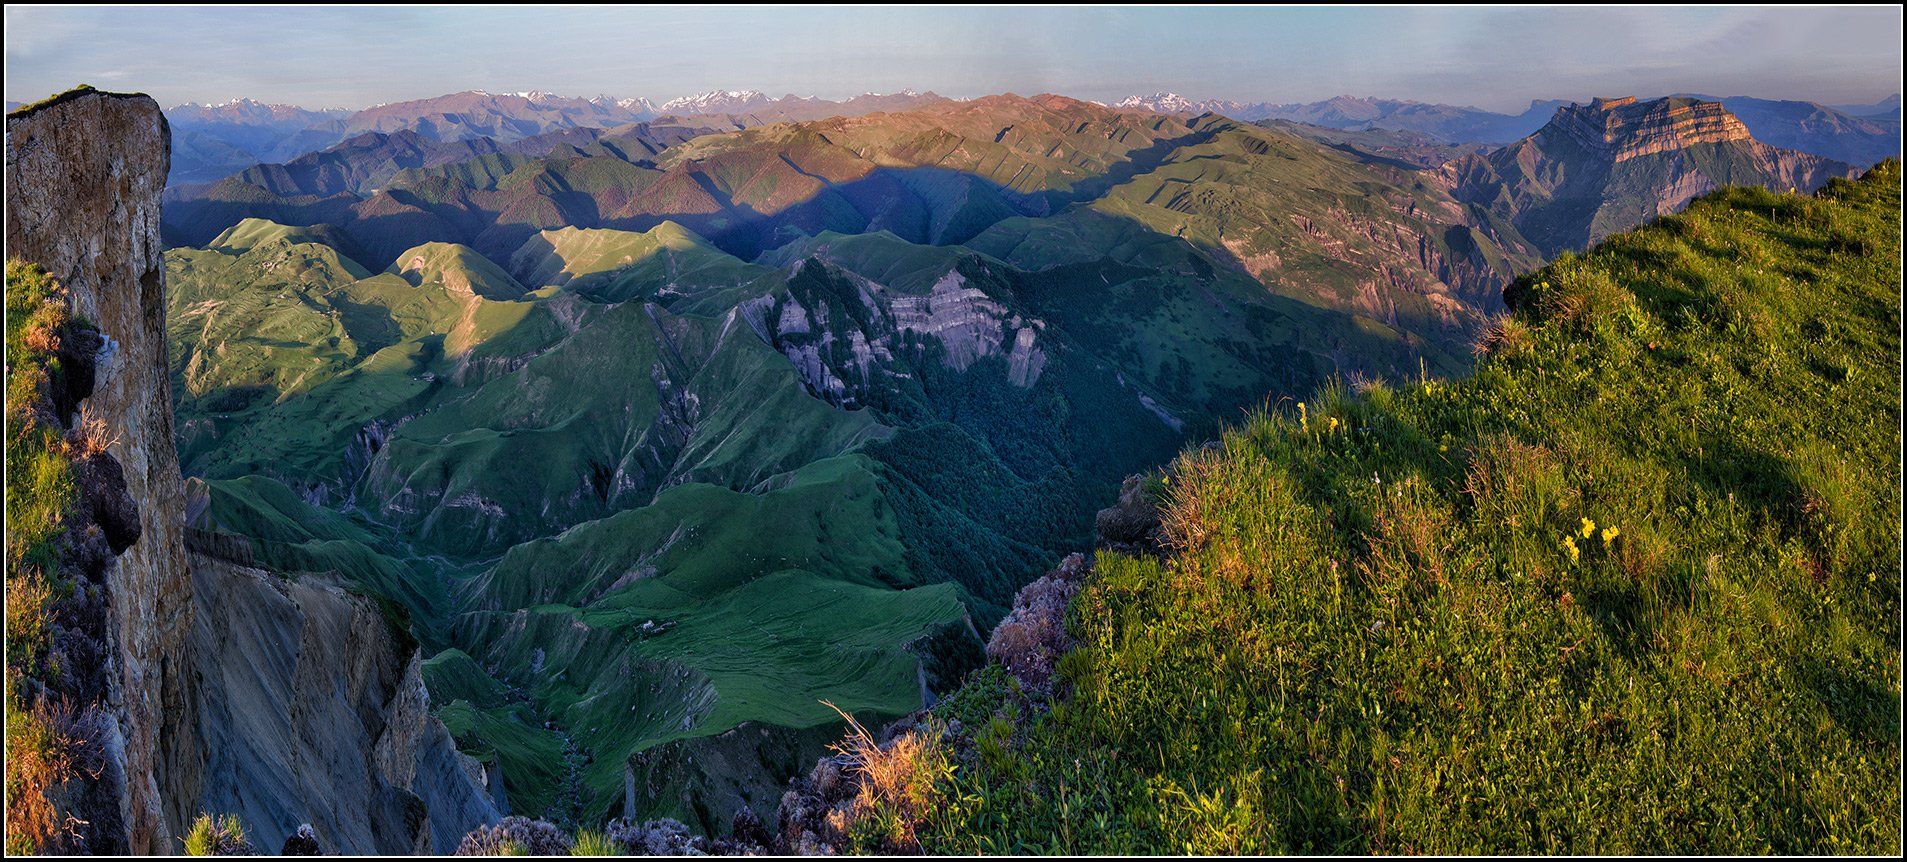 кавказ, дагестан, утро, панорама, АНАТОЛИЙ ДОВЫДЕНКО